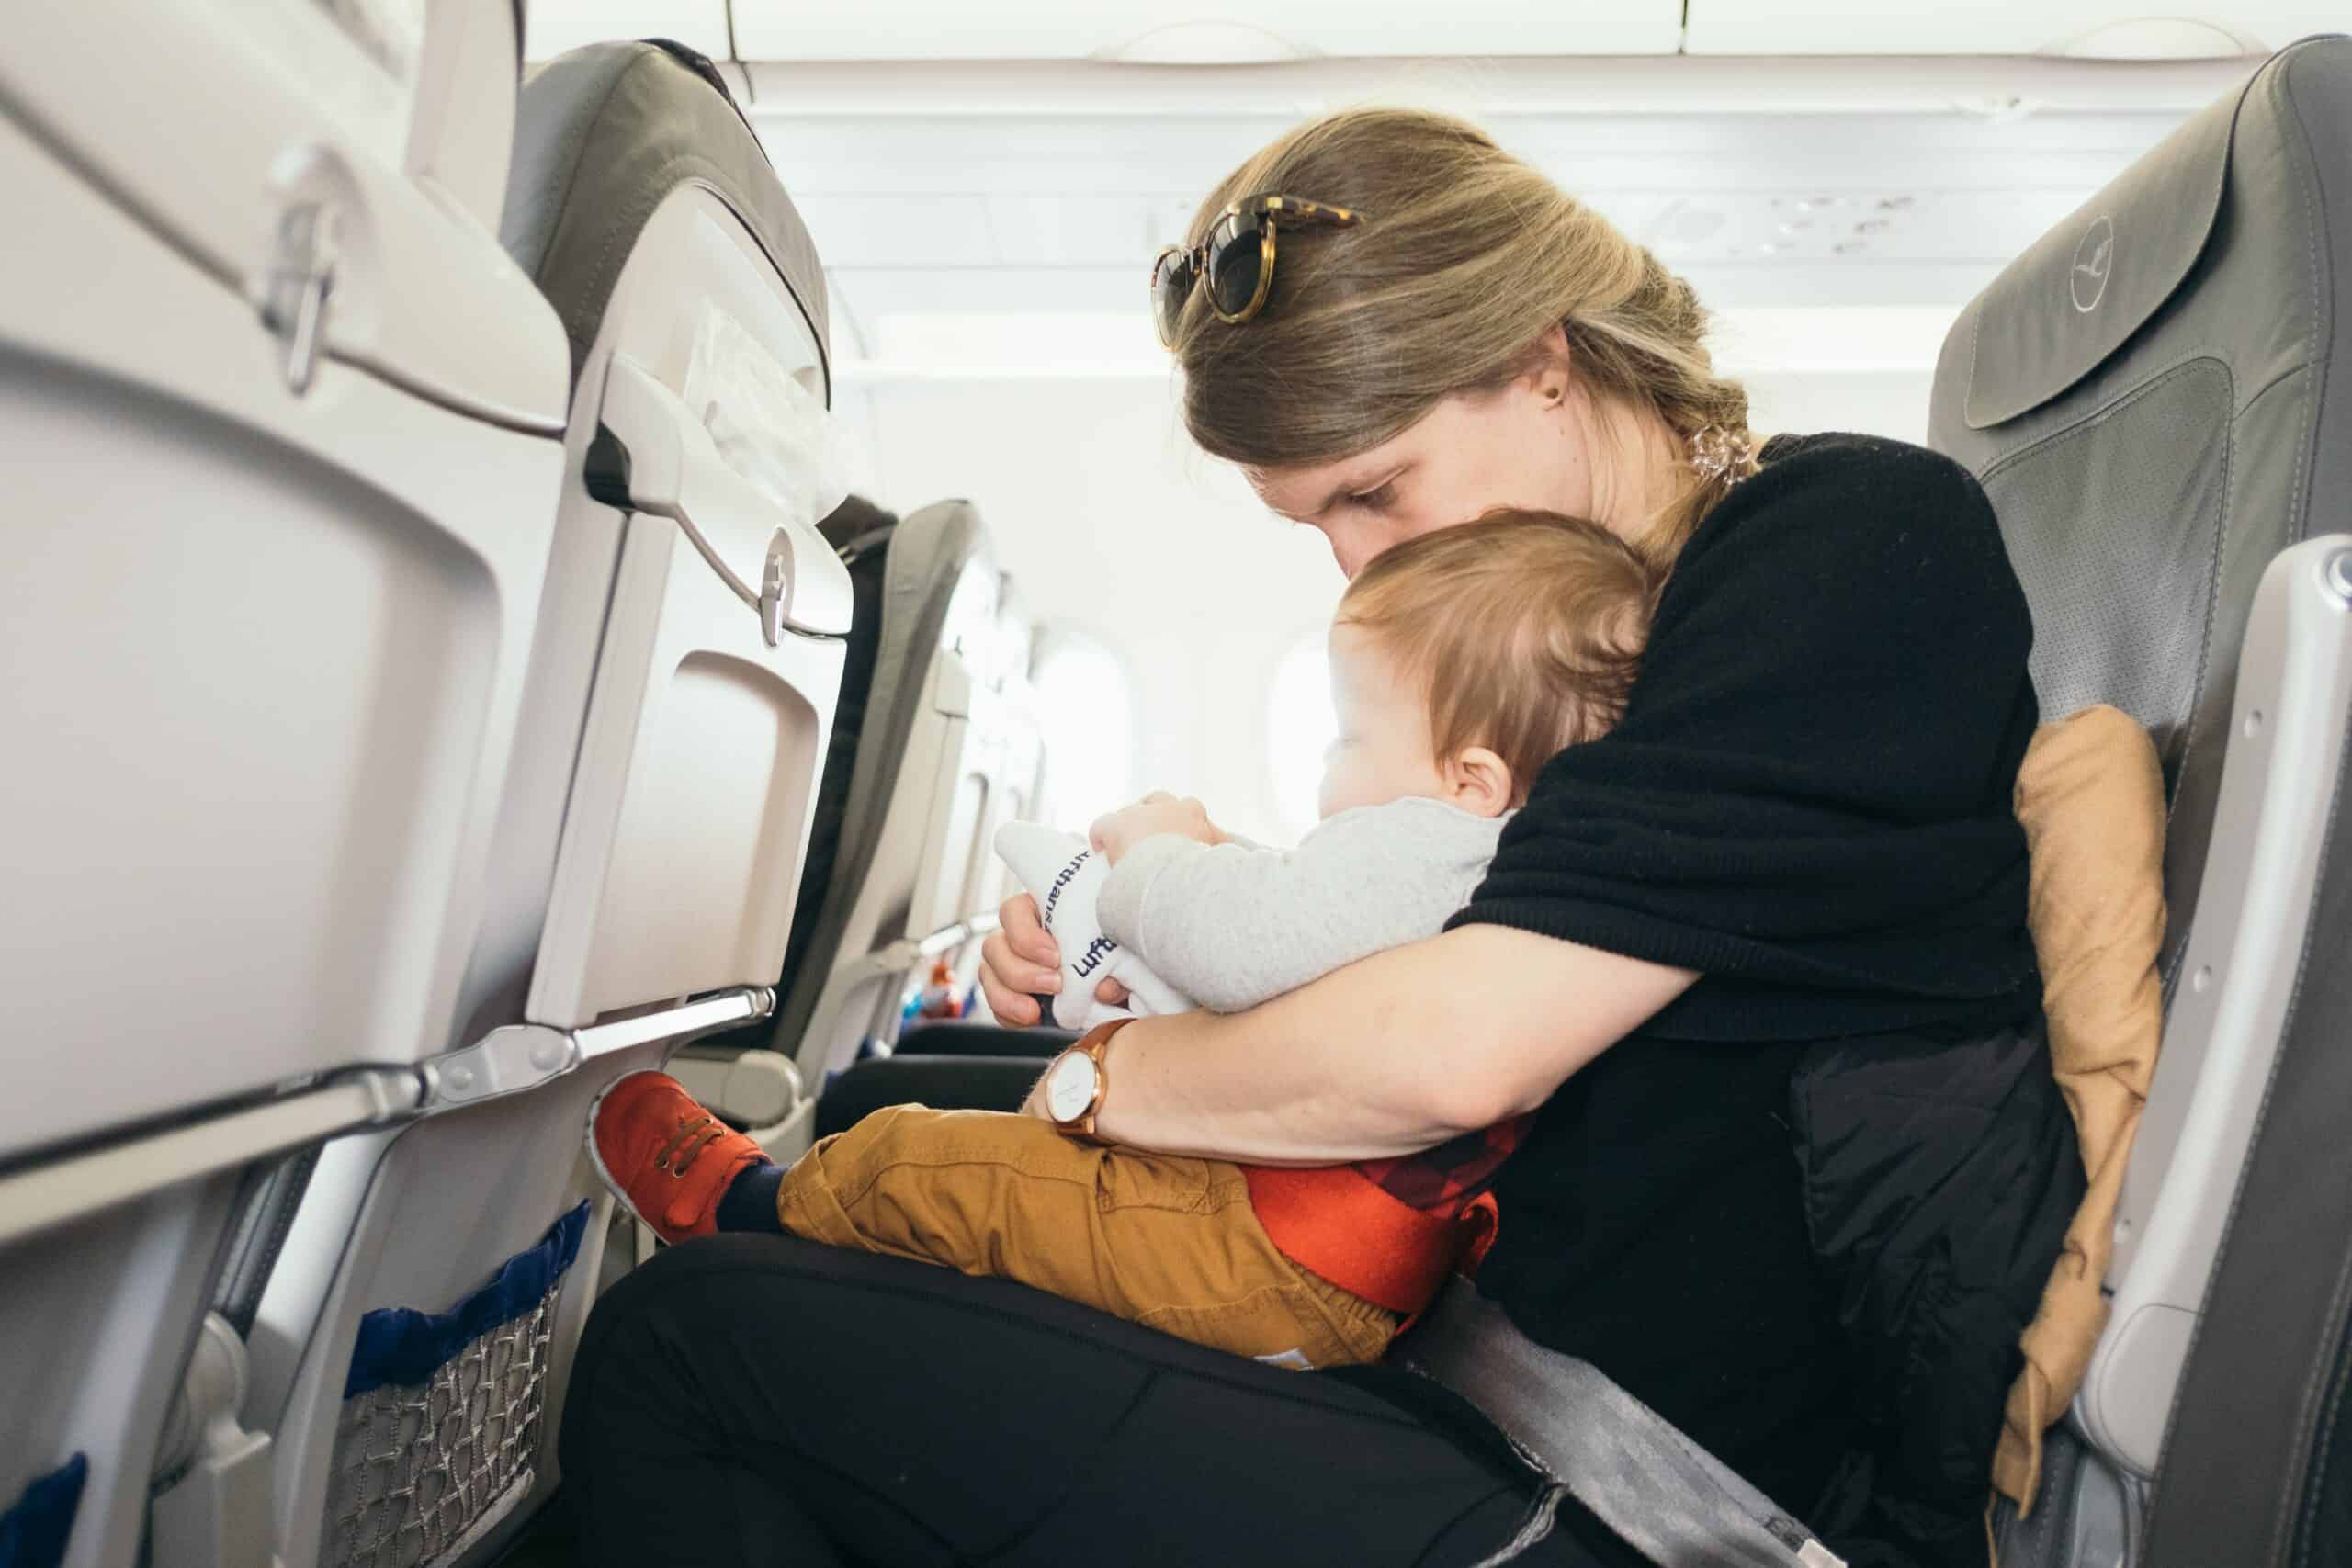 should babies wear ear muffs on planes